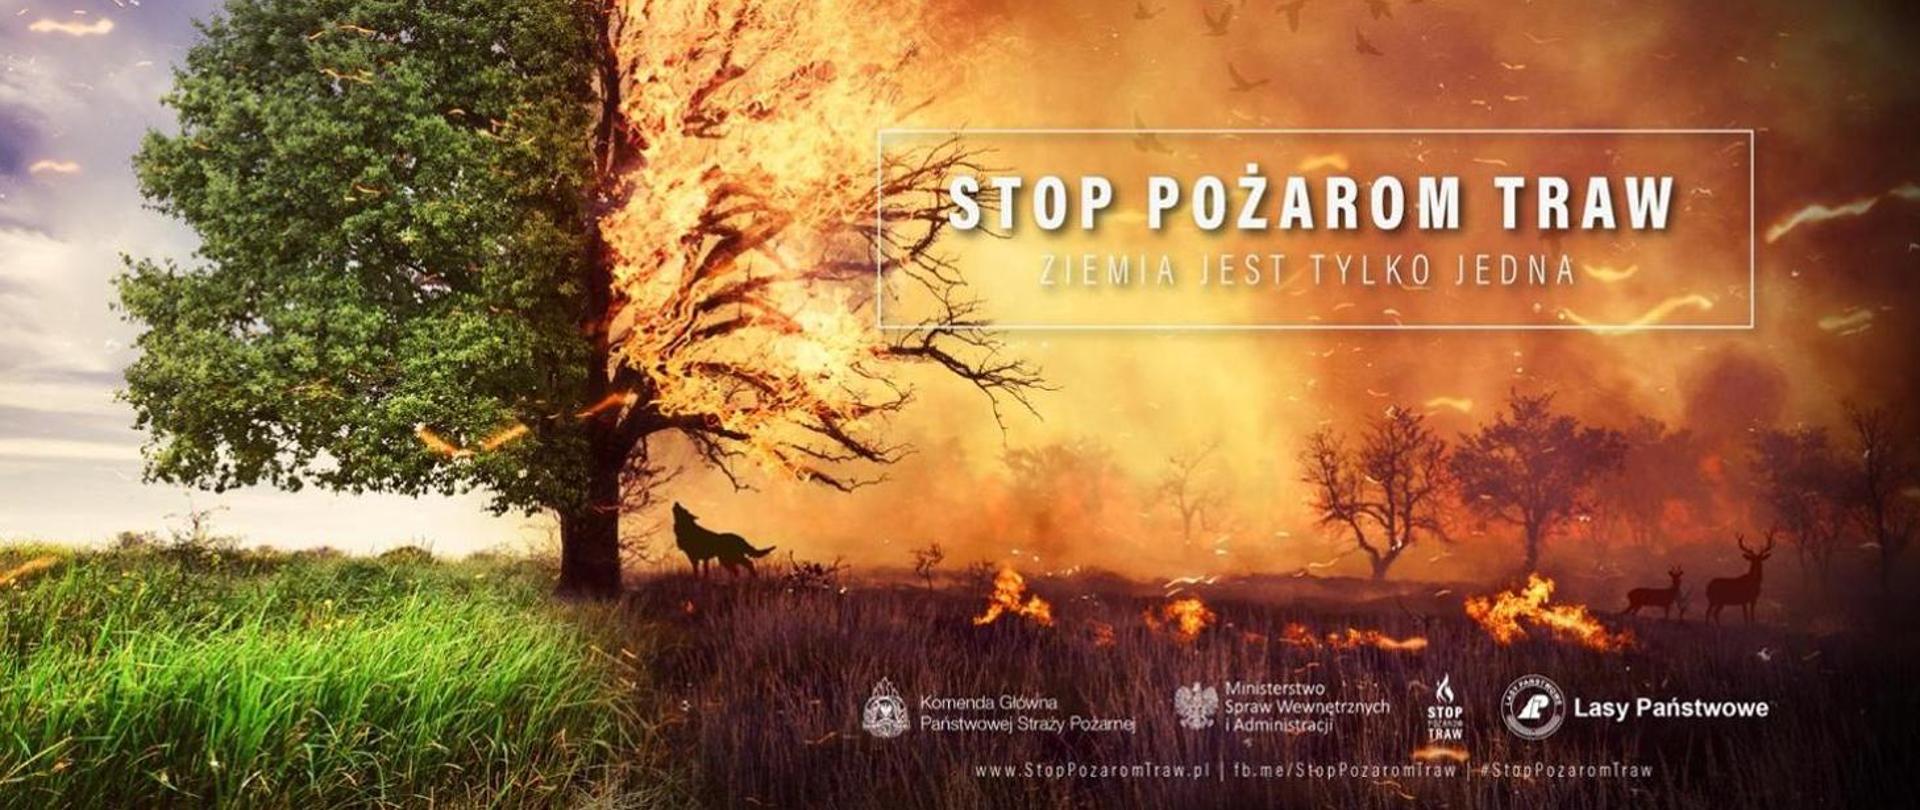 Kolorowa fotografia promująca ogólnopolską kampanię "Stop Pożarom traw". Przedstawia duże drzewo oraz roślinność wokół niego, które w połowie jest spalone przez ogień, a w połowie jest zielone. Na dole znajdują się loga KG PSP, MSWiA oraz Lasów Państwowych